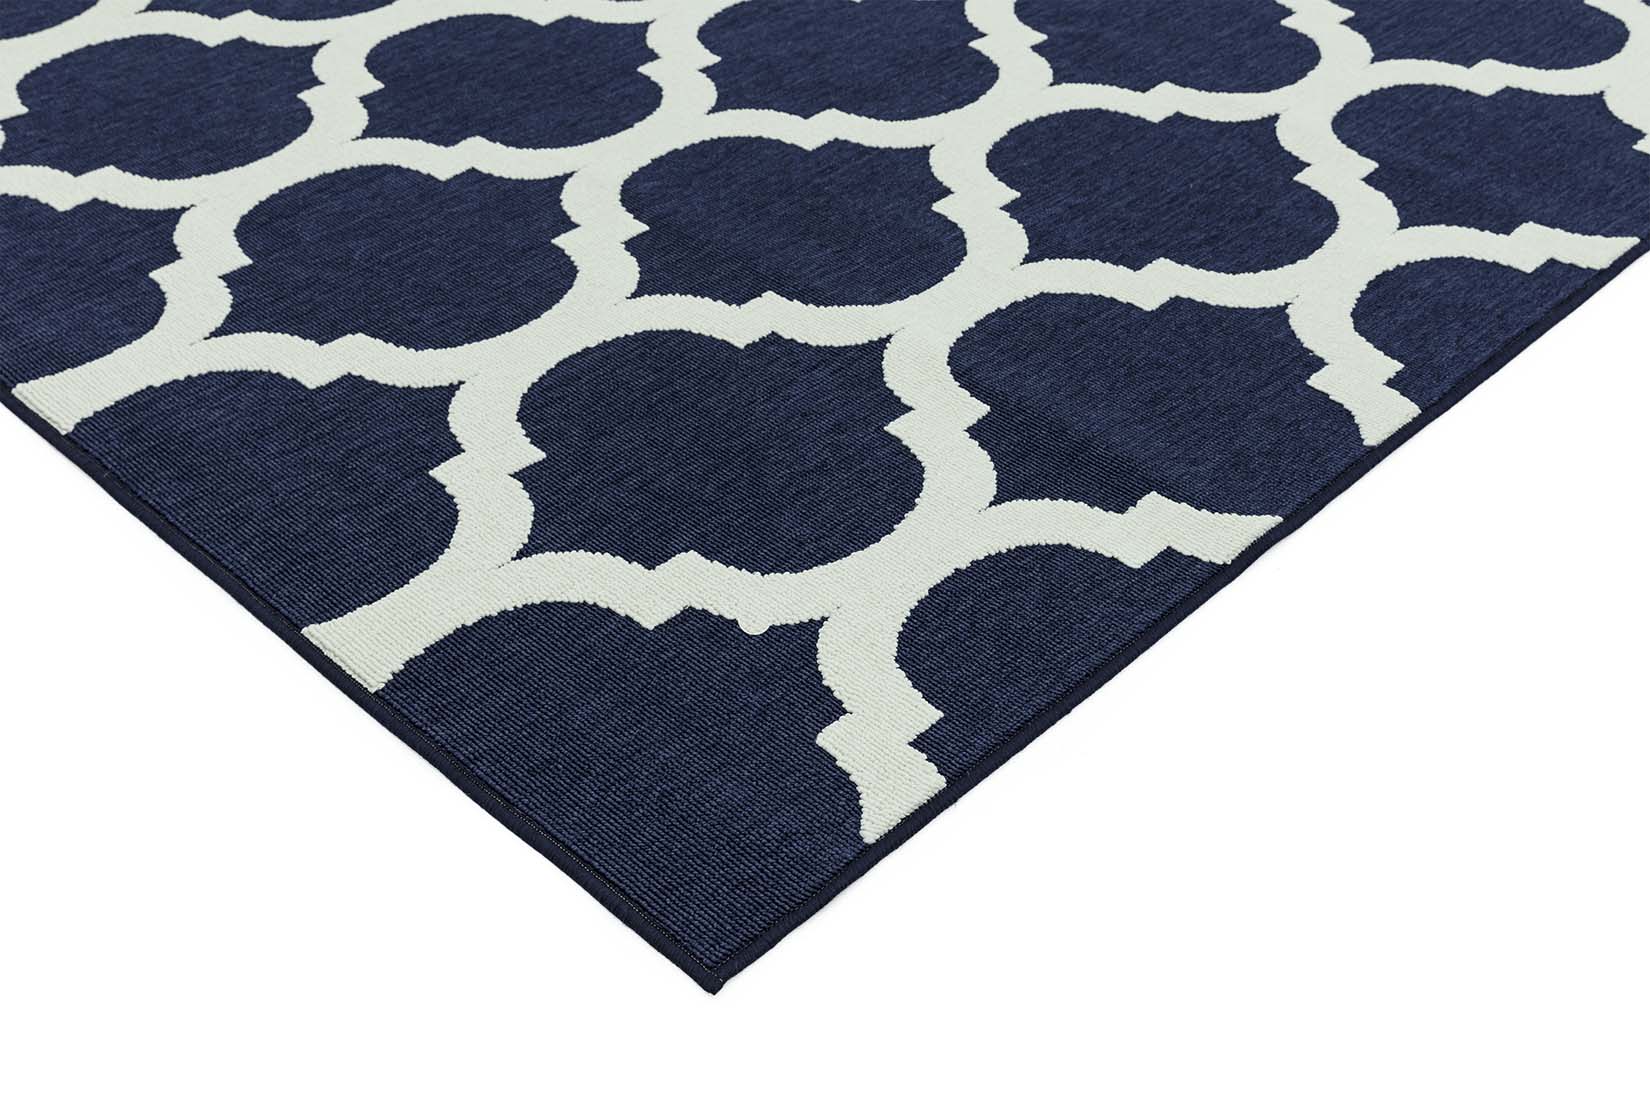 navy indoor/outdoor rug with trellis design
